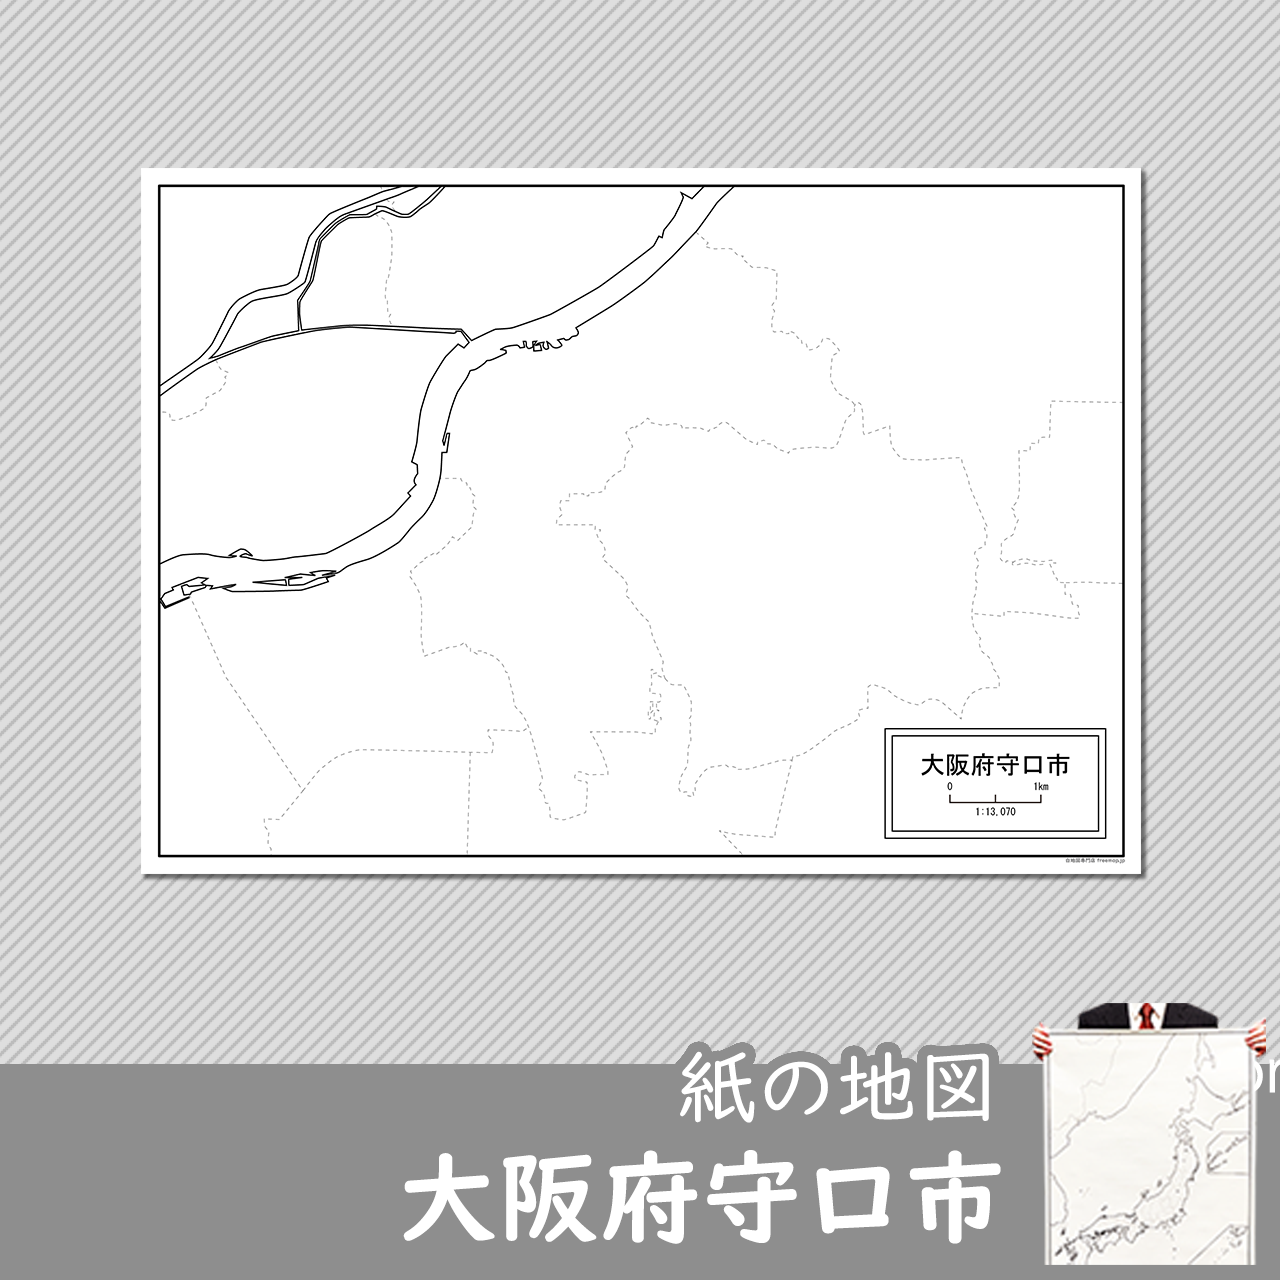 大阪府守口市の紙の白地図